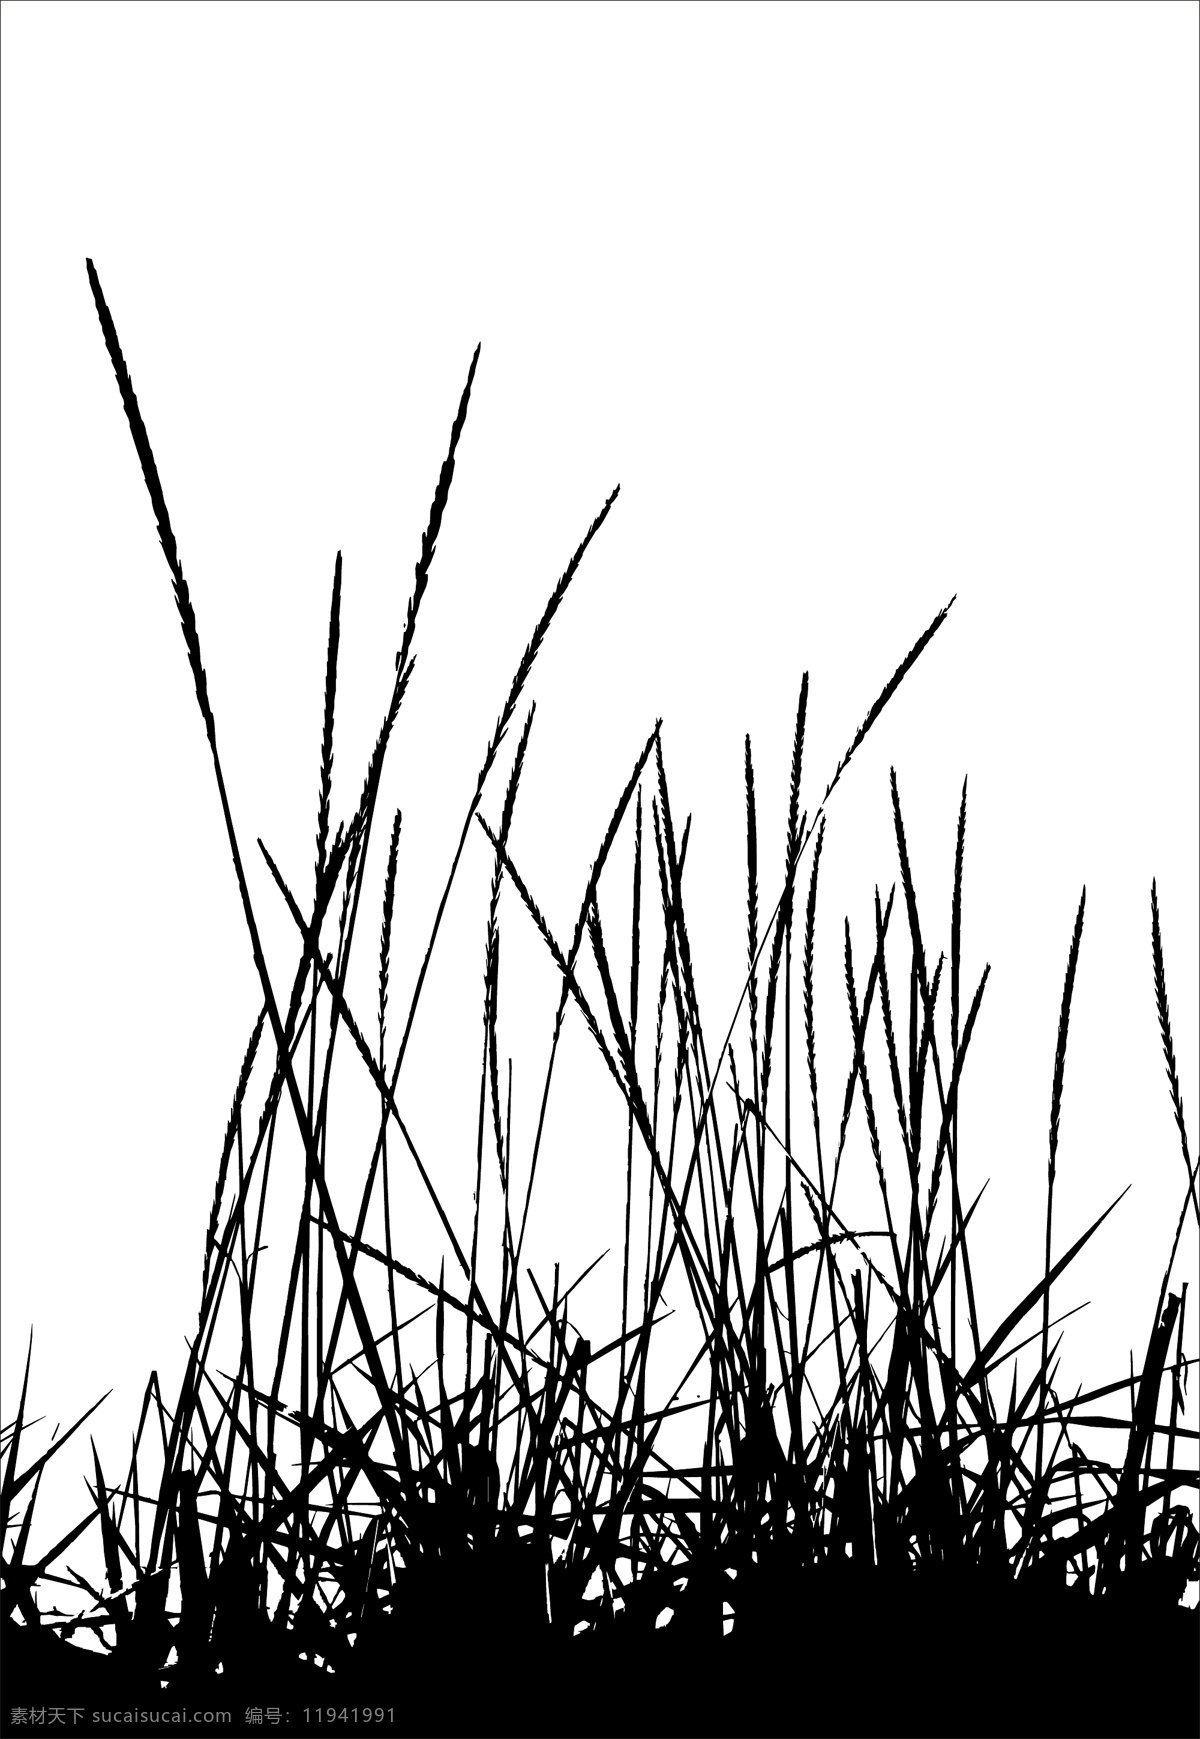 草丛 剪影 插画 模板 设计稿 素材元素 源文件 植物 矢量图